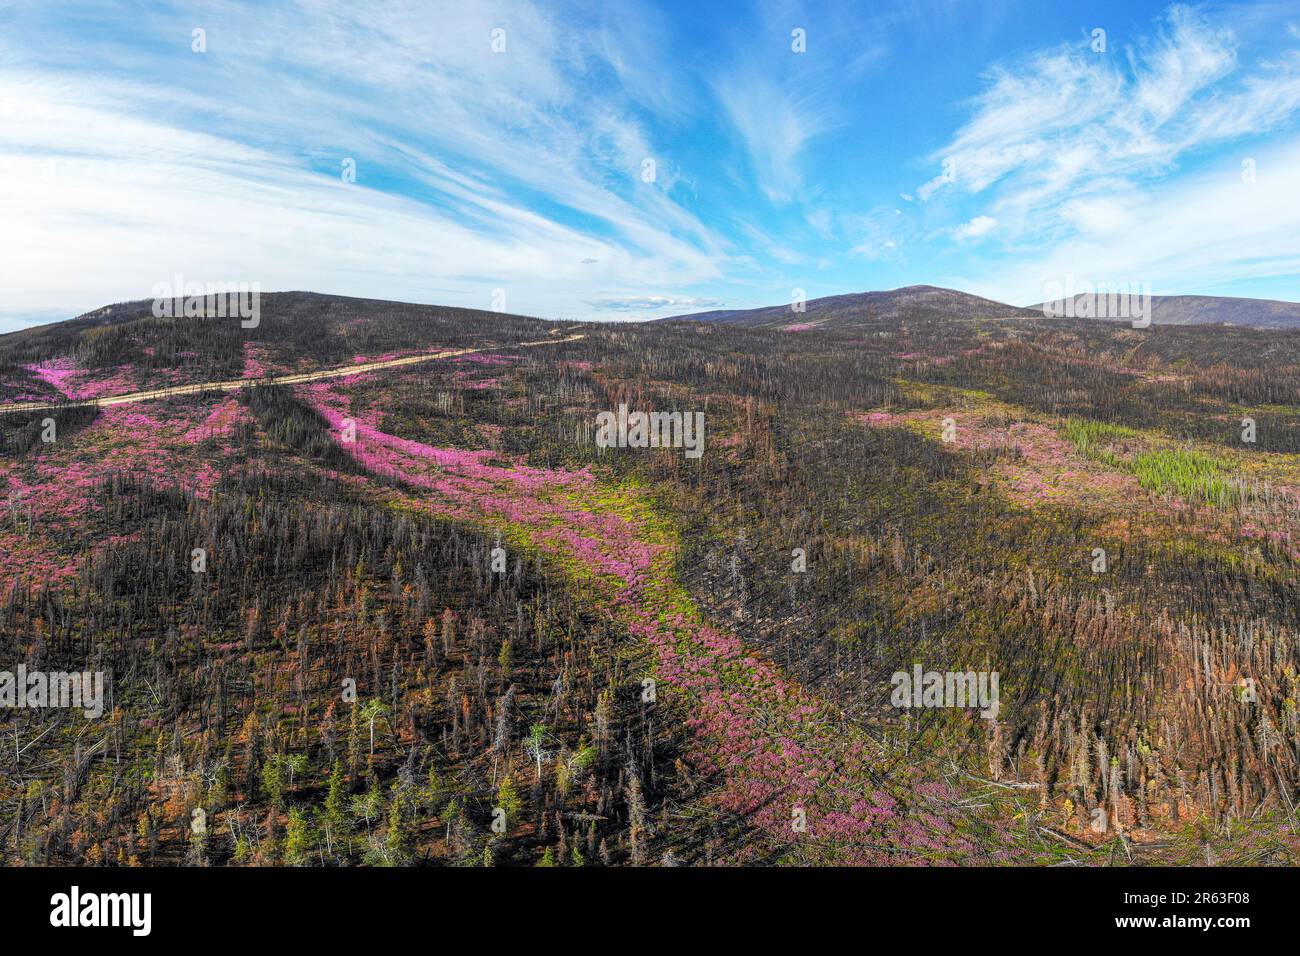 Drohne, Luftaufnahme der Landschaft des Yukon Territory im Sommer mit Straße, Highway durch Wildnis und rosafarbener Feuerweed-Wildblumen-Szene Stockfoto